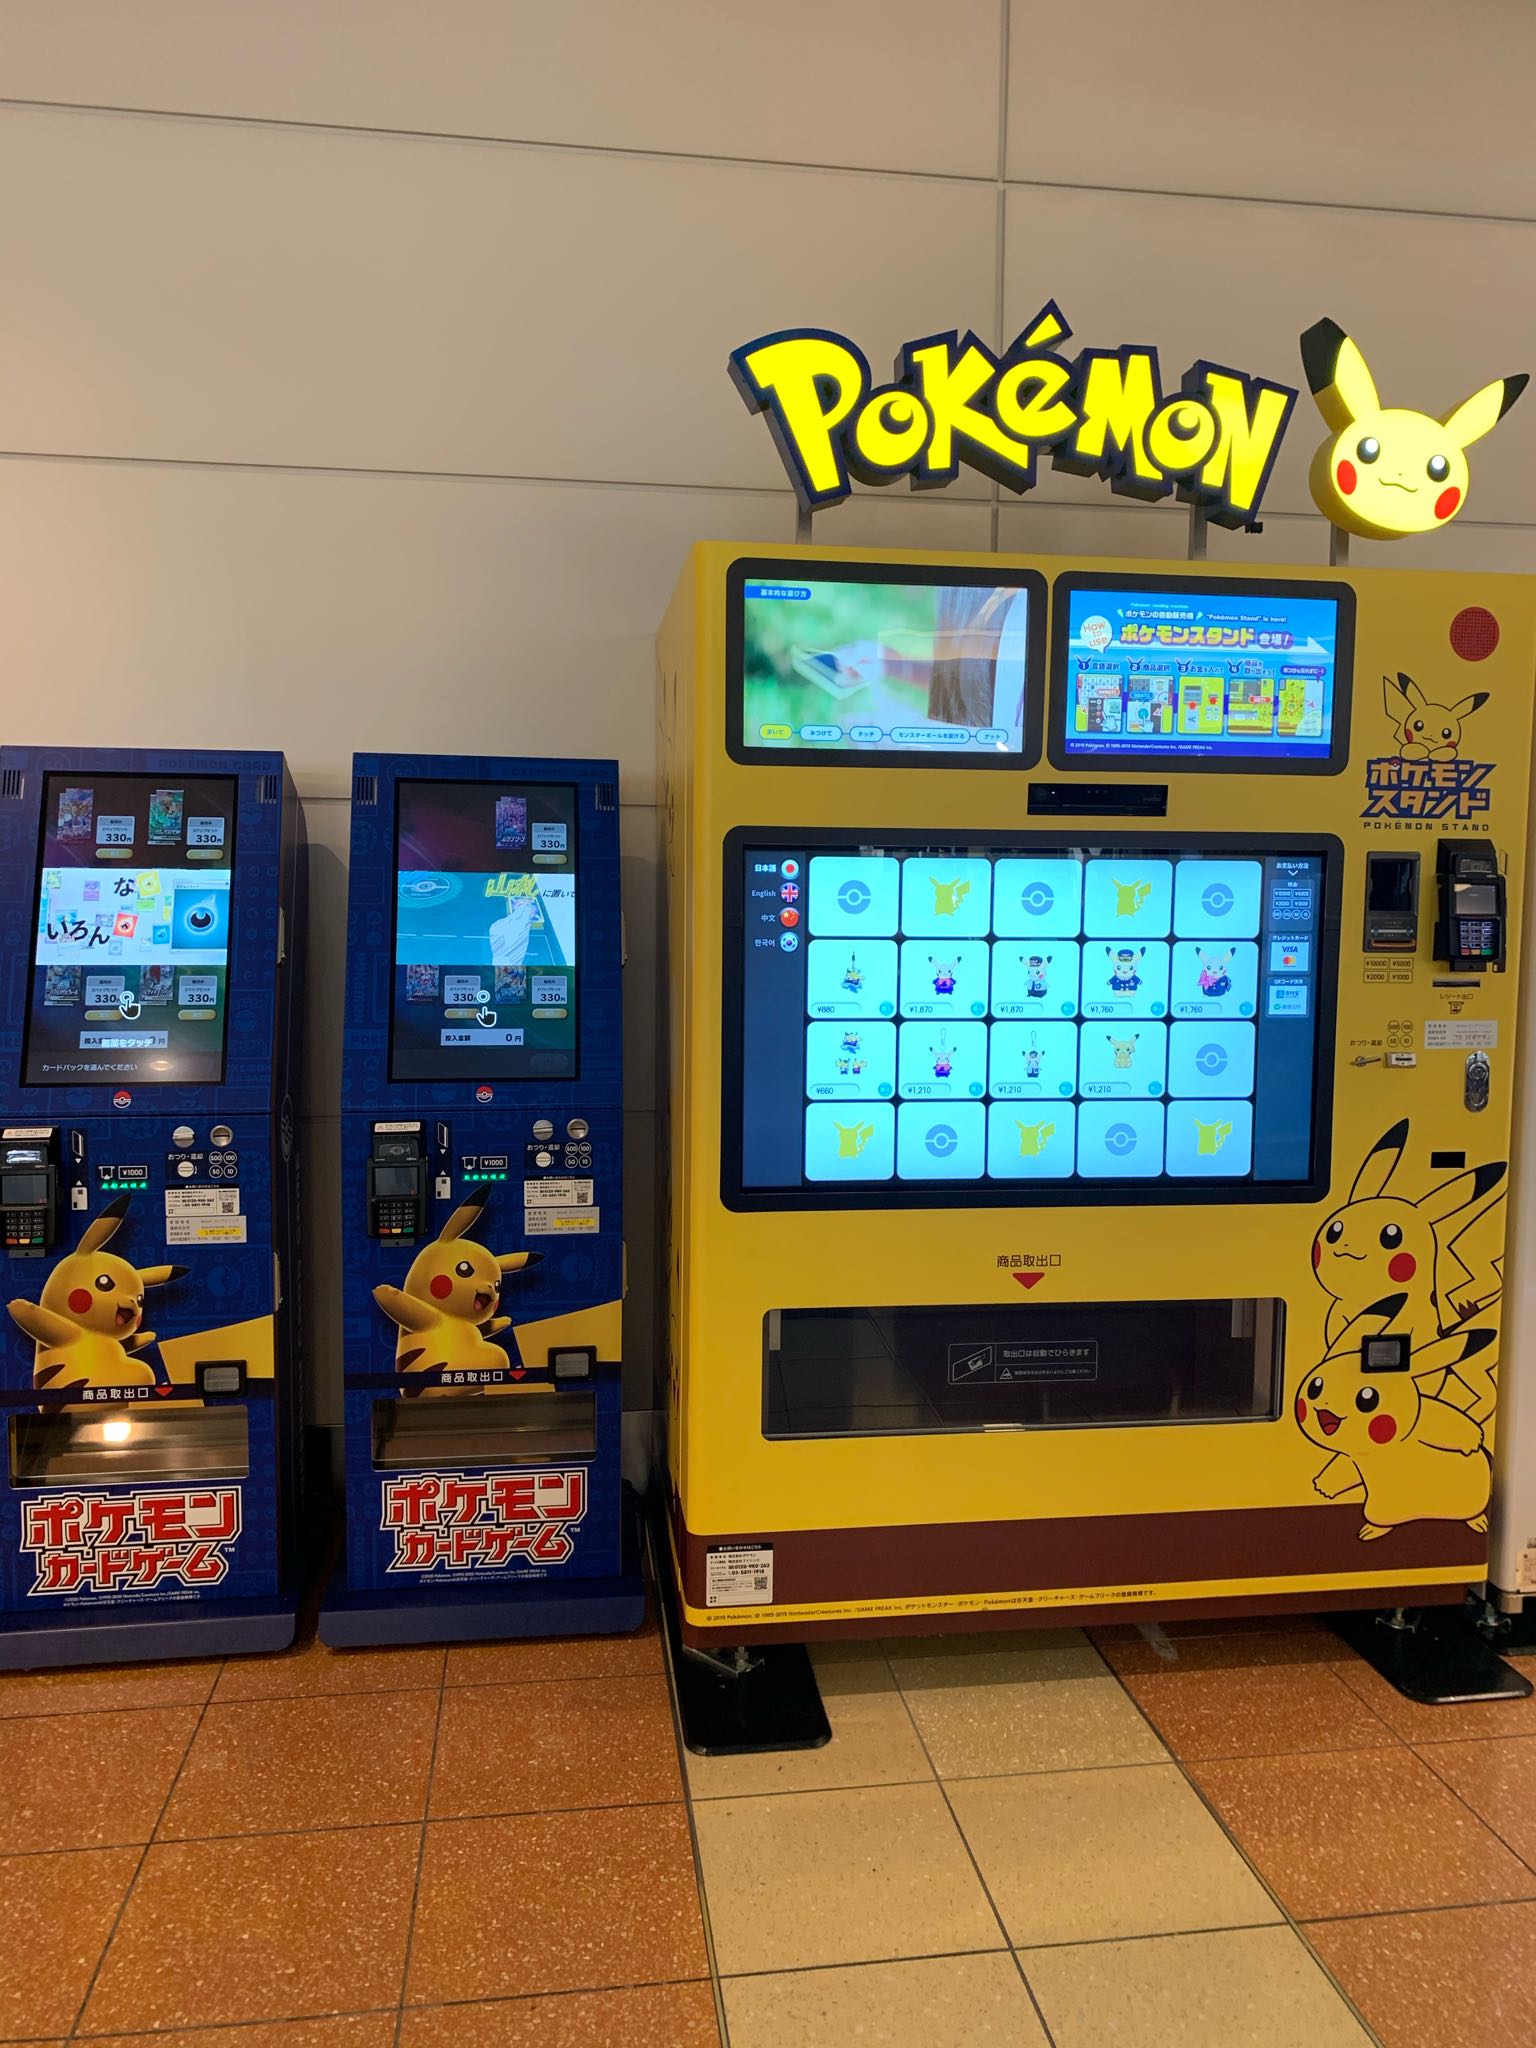 ポケモンセンターnakayama 羽田空港のポケモンスタンド横にも ポケモンカードの自販機がありようです Twitter